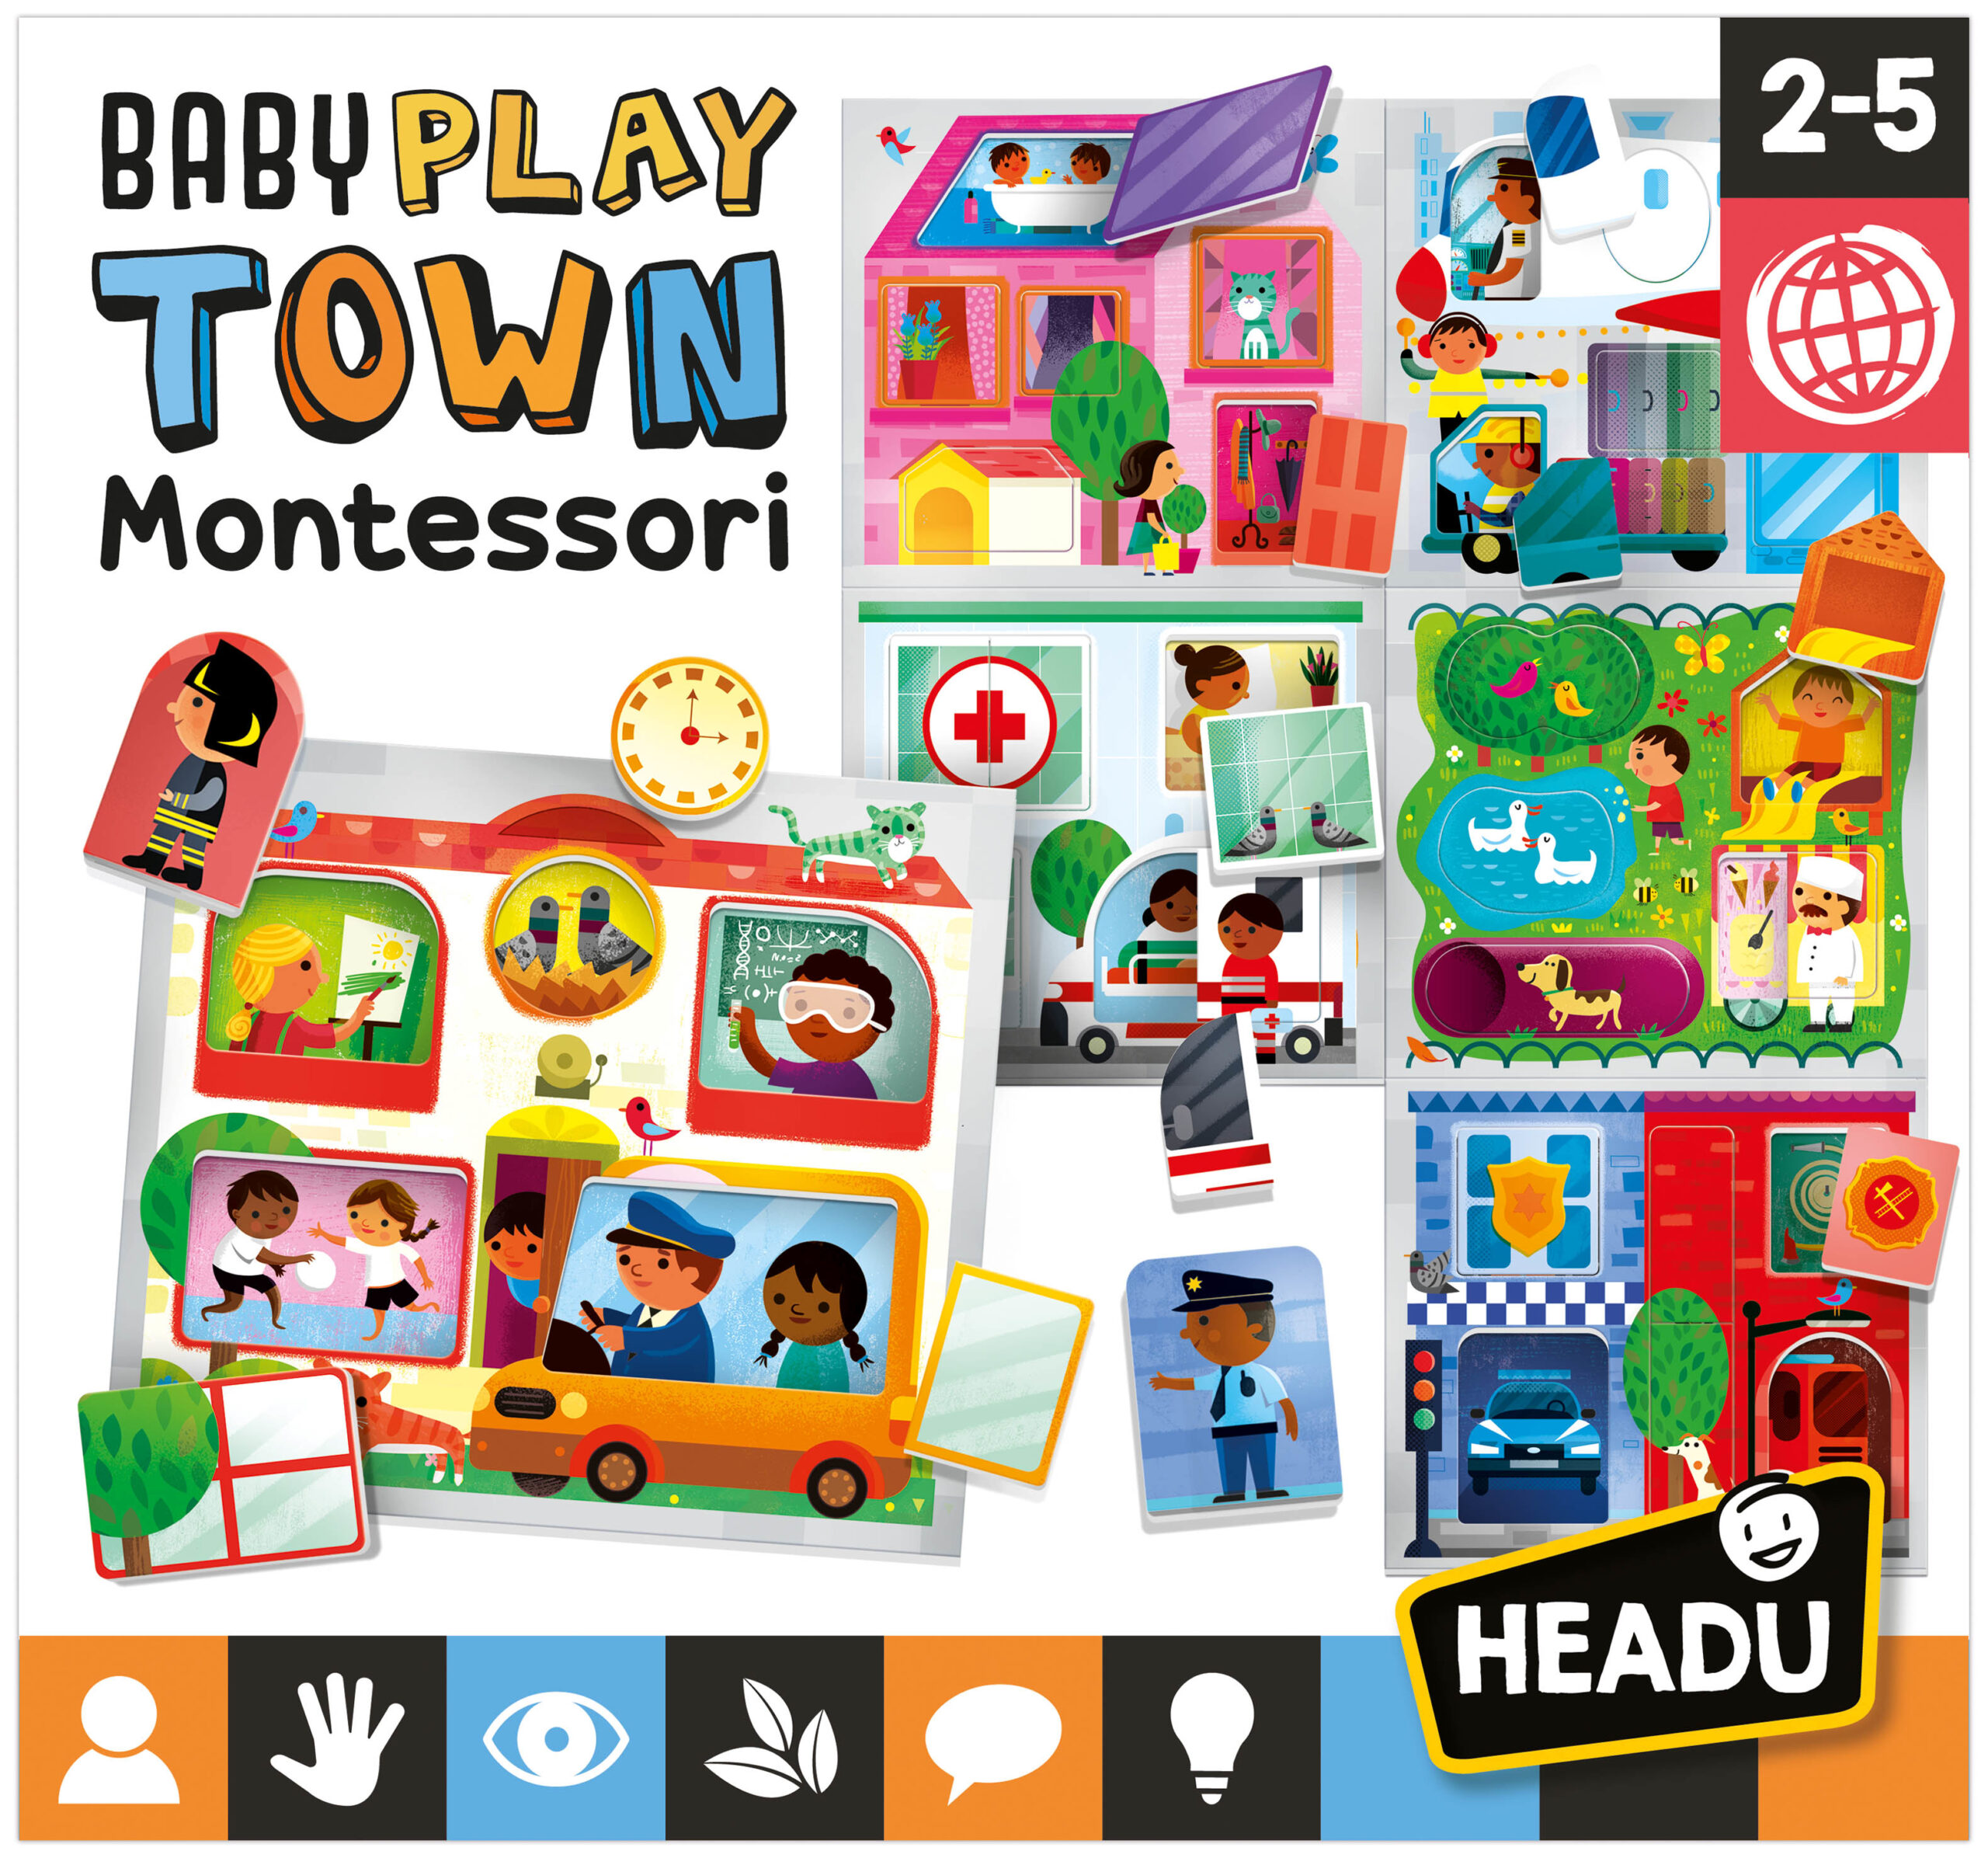 Headu baby play town montessori - 